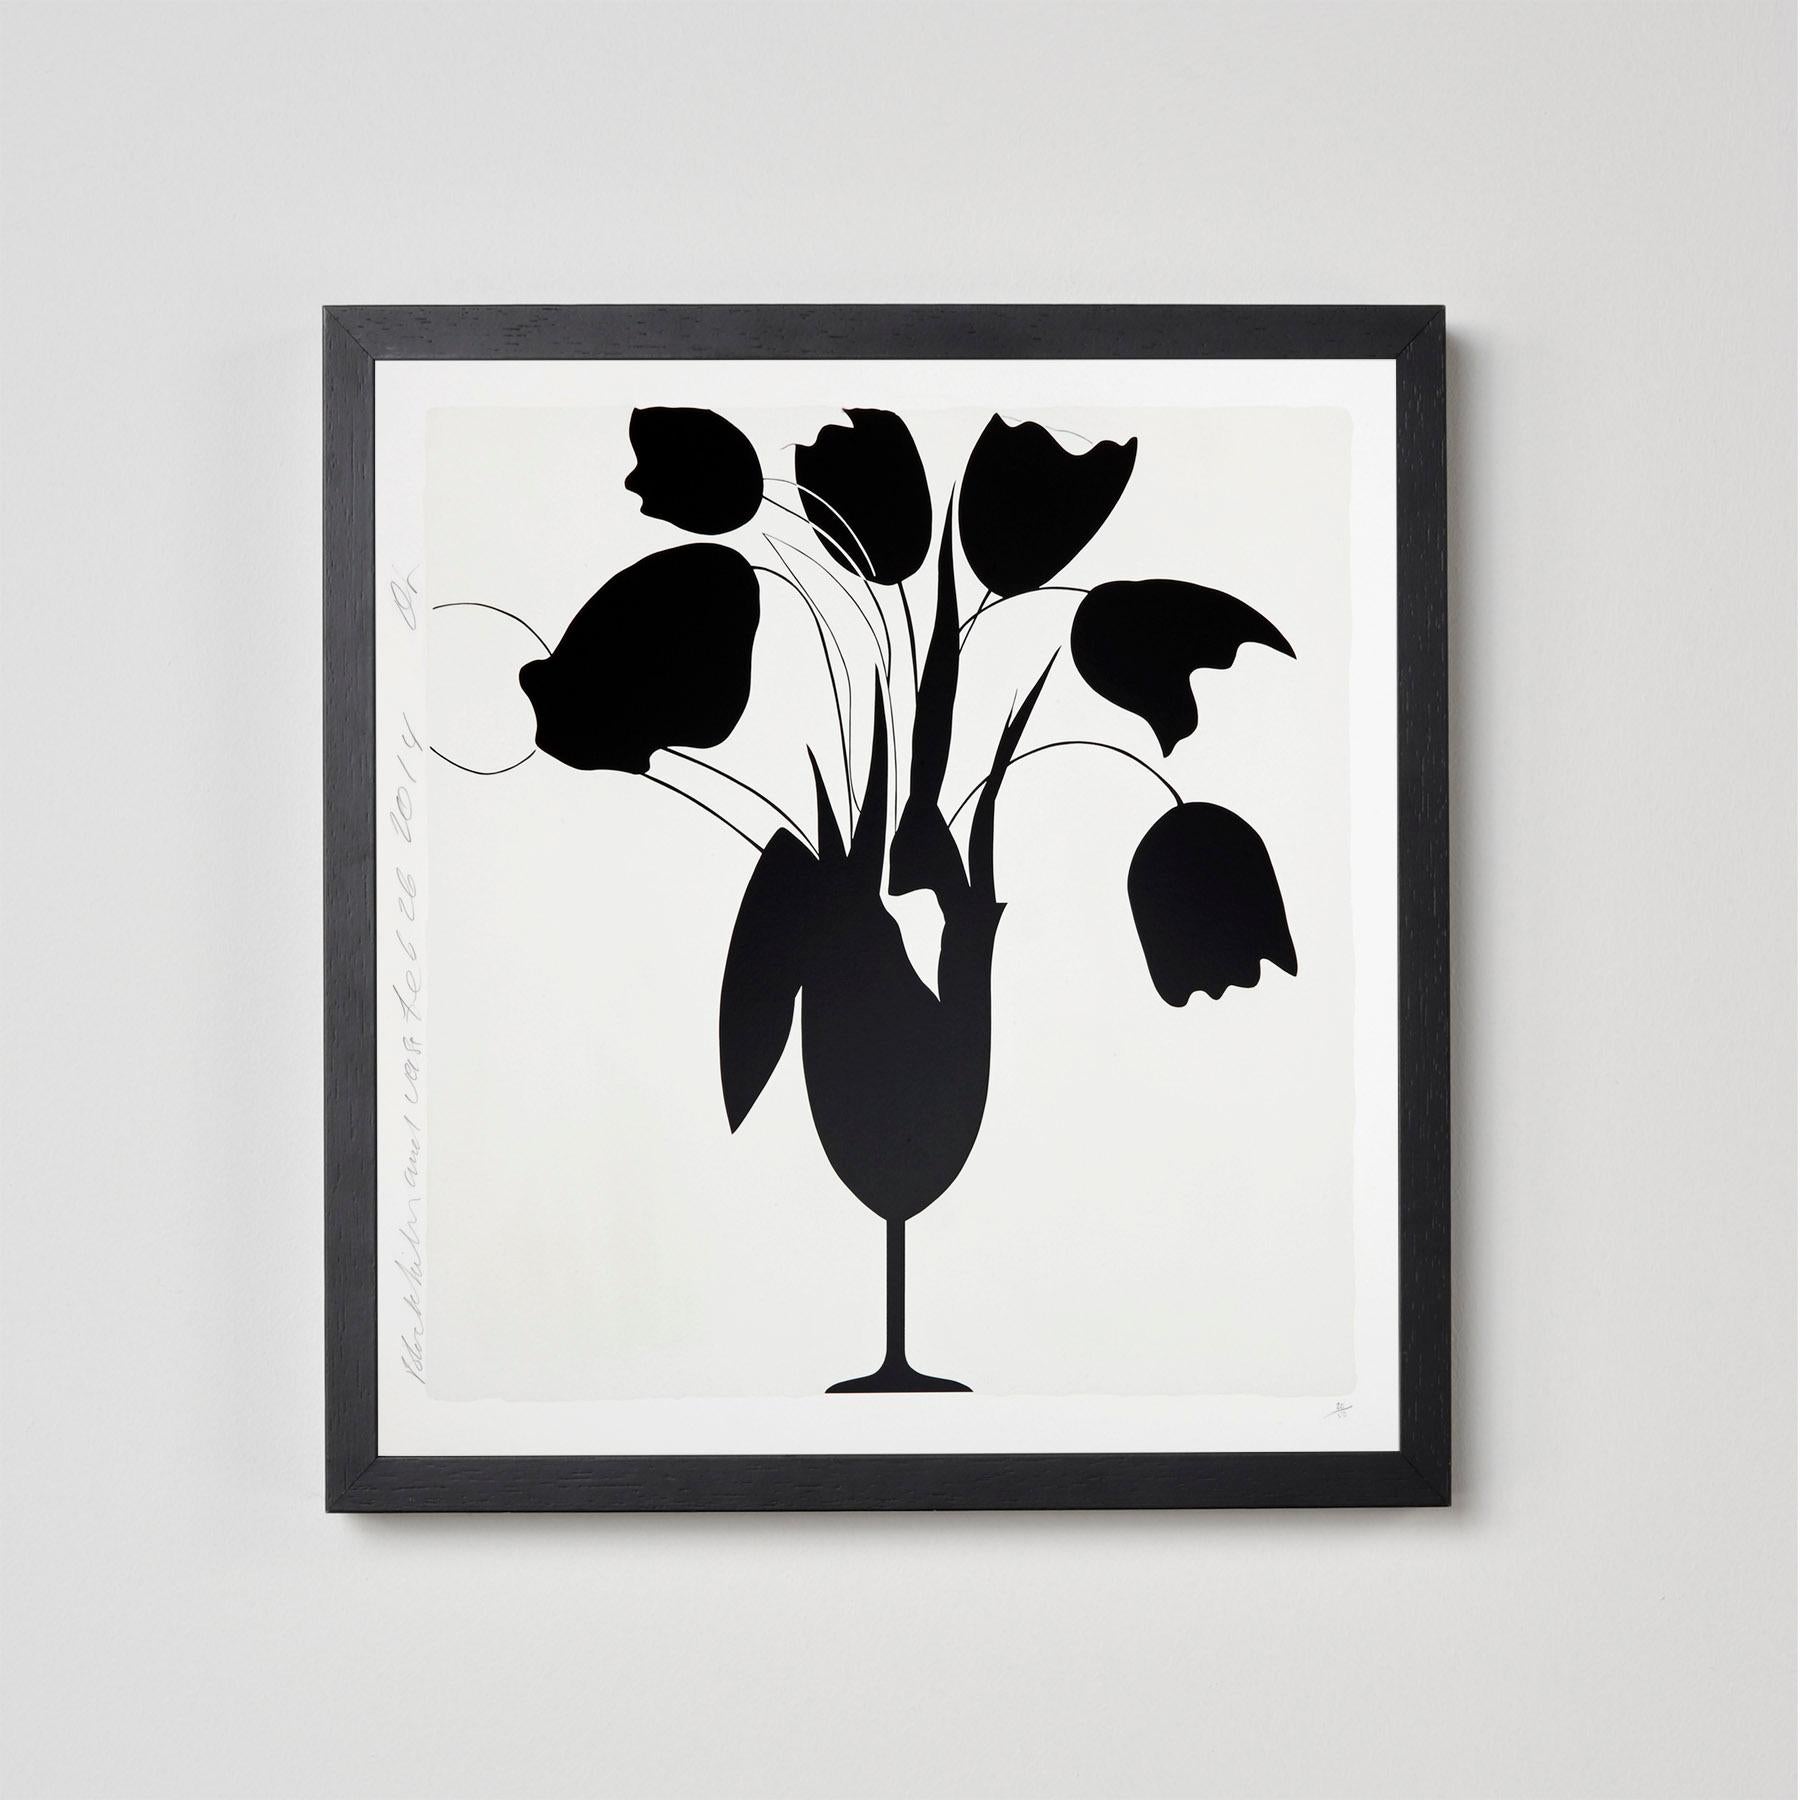 Tulips et vase noirs contemporains, 21e siècle, sérigraphie, édition limitée - Contemporain Print par Donald Sultan